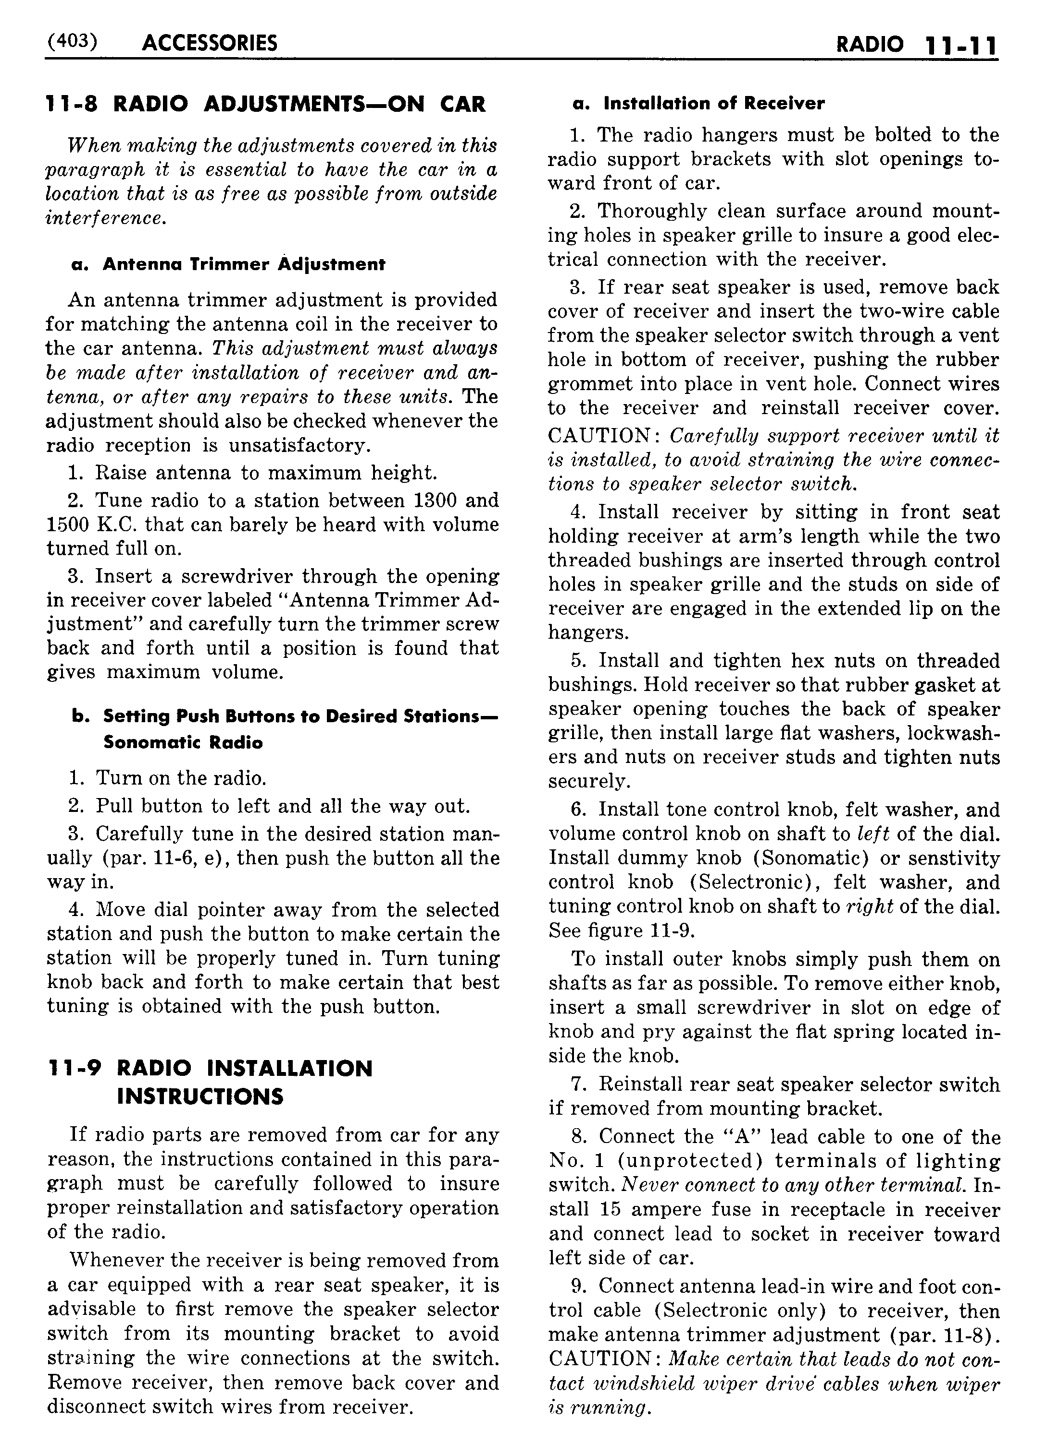 n_12 1951 Buick Shop Manual - Accessories-011-011.jpg